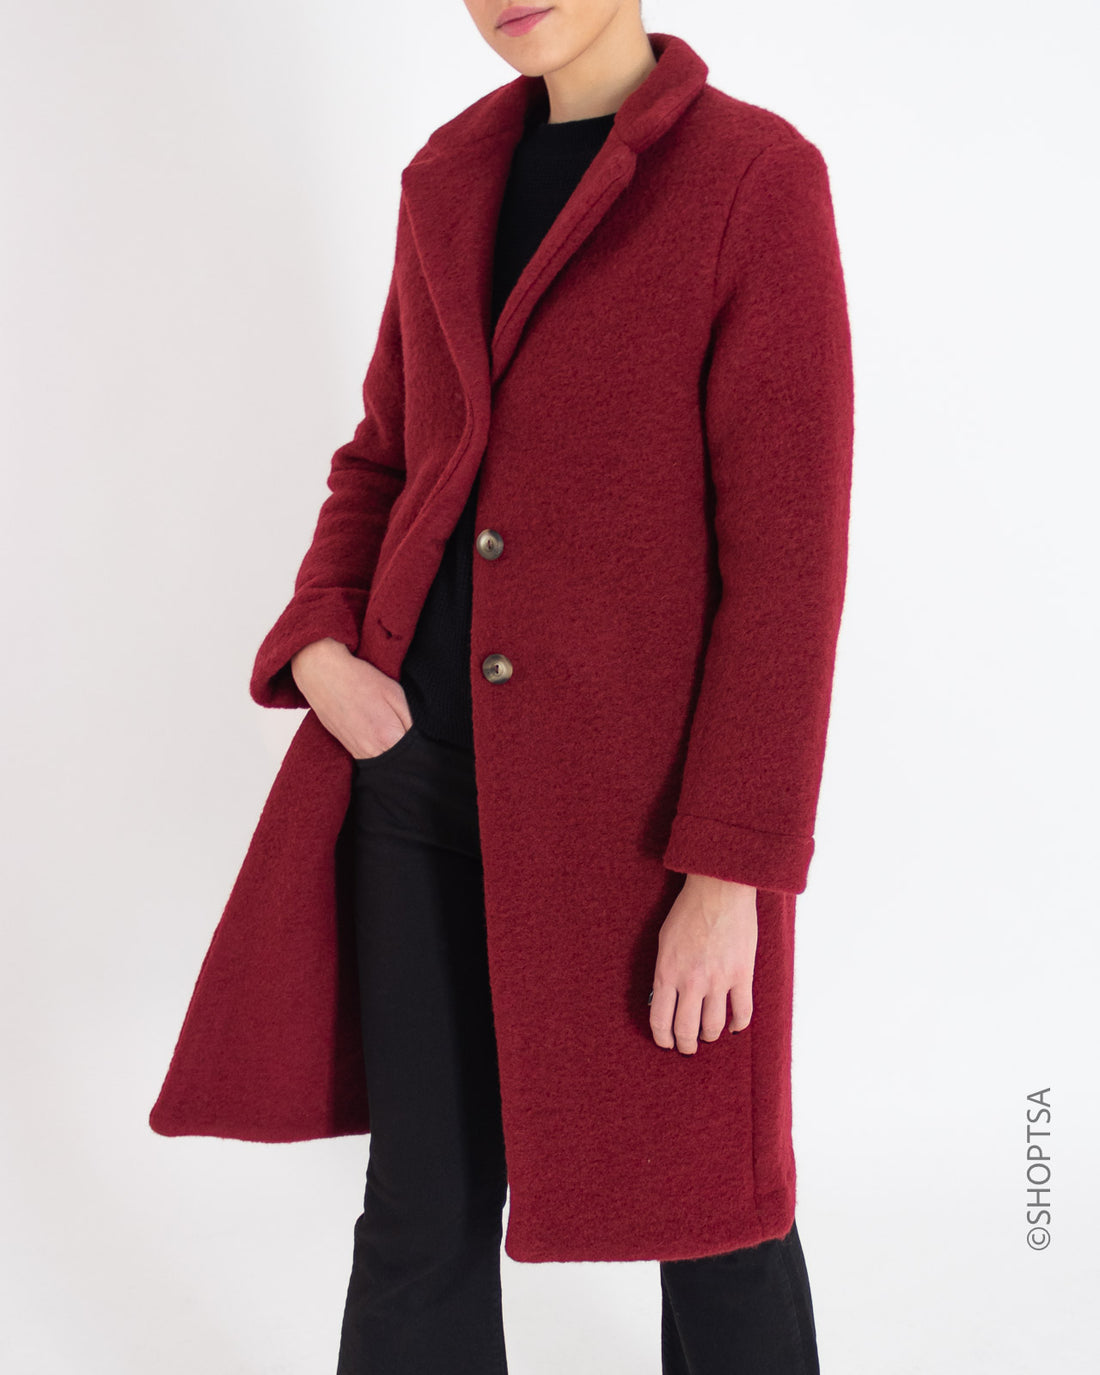 Long red wool coat - RAGNO